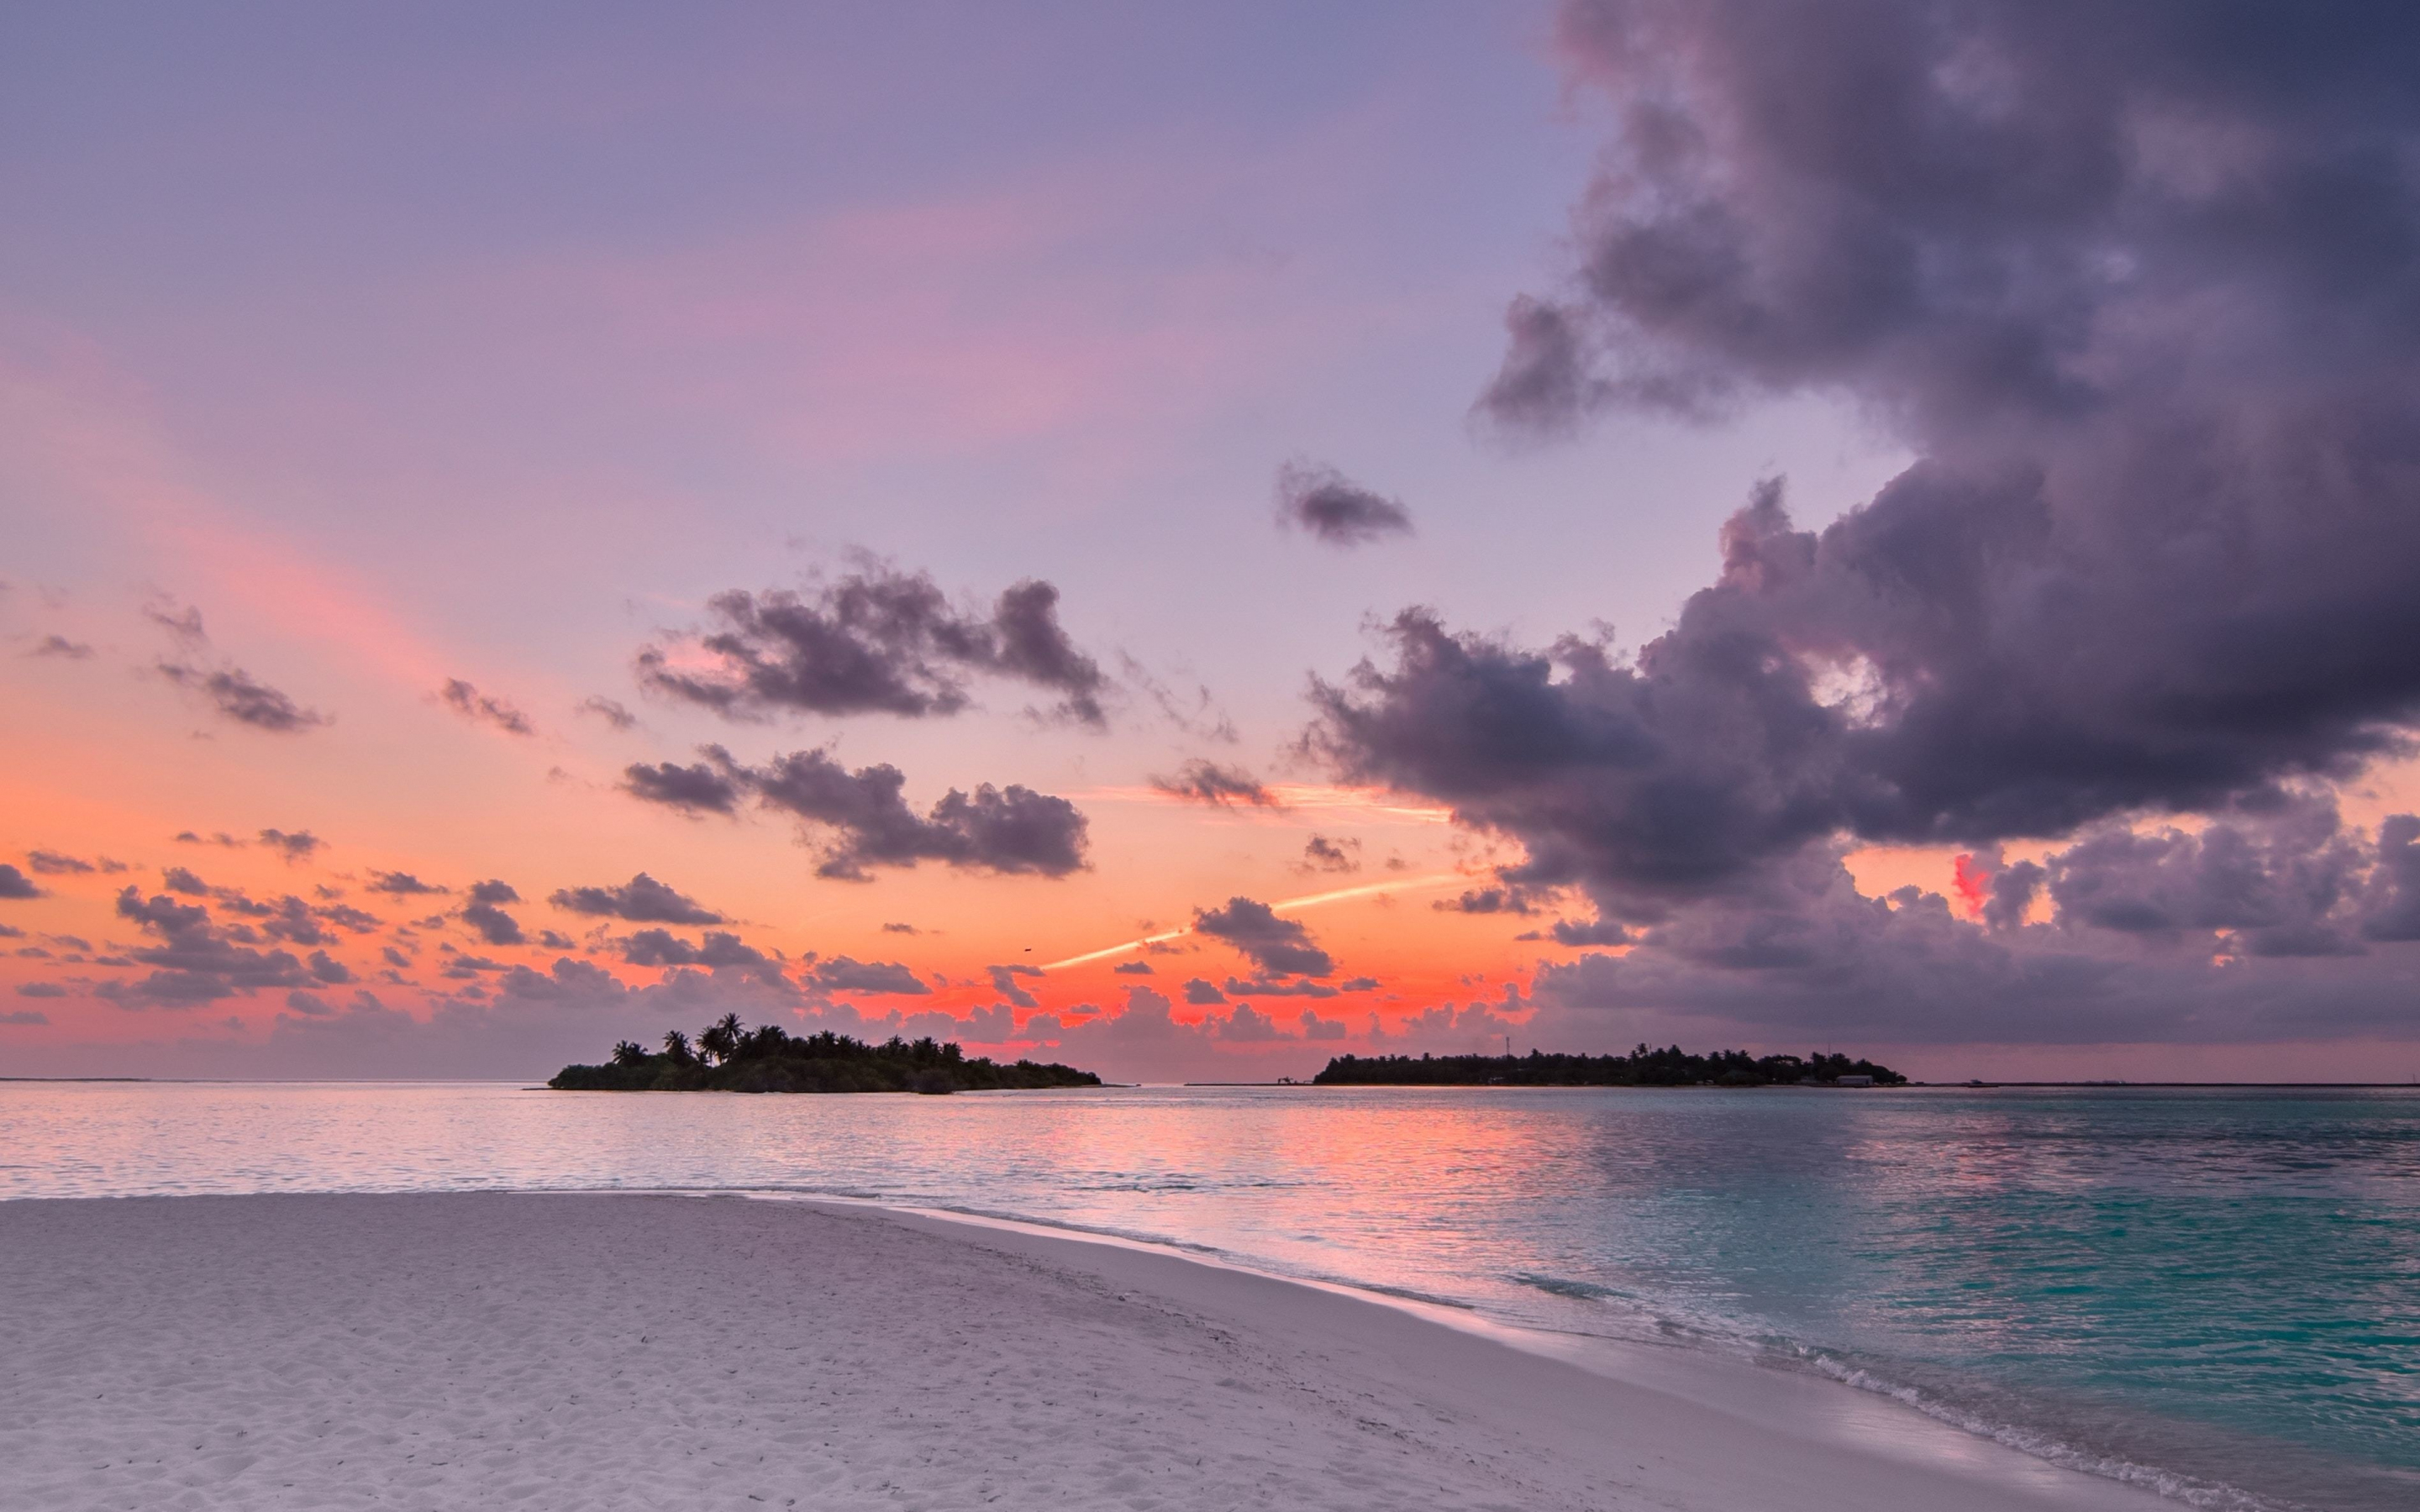 Beach, island, sunset, clouds, nature, 2880x1800 wallpaper